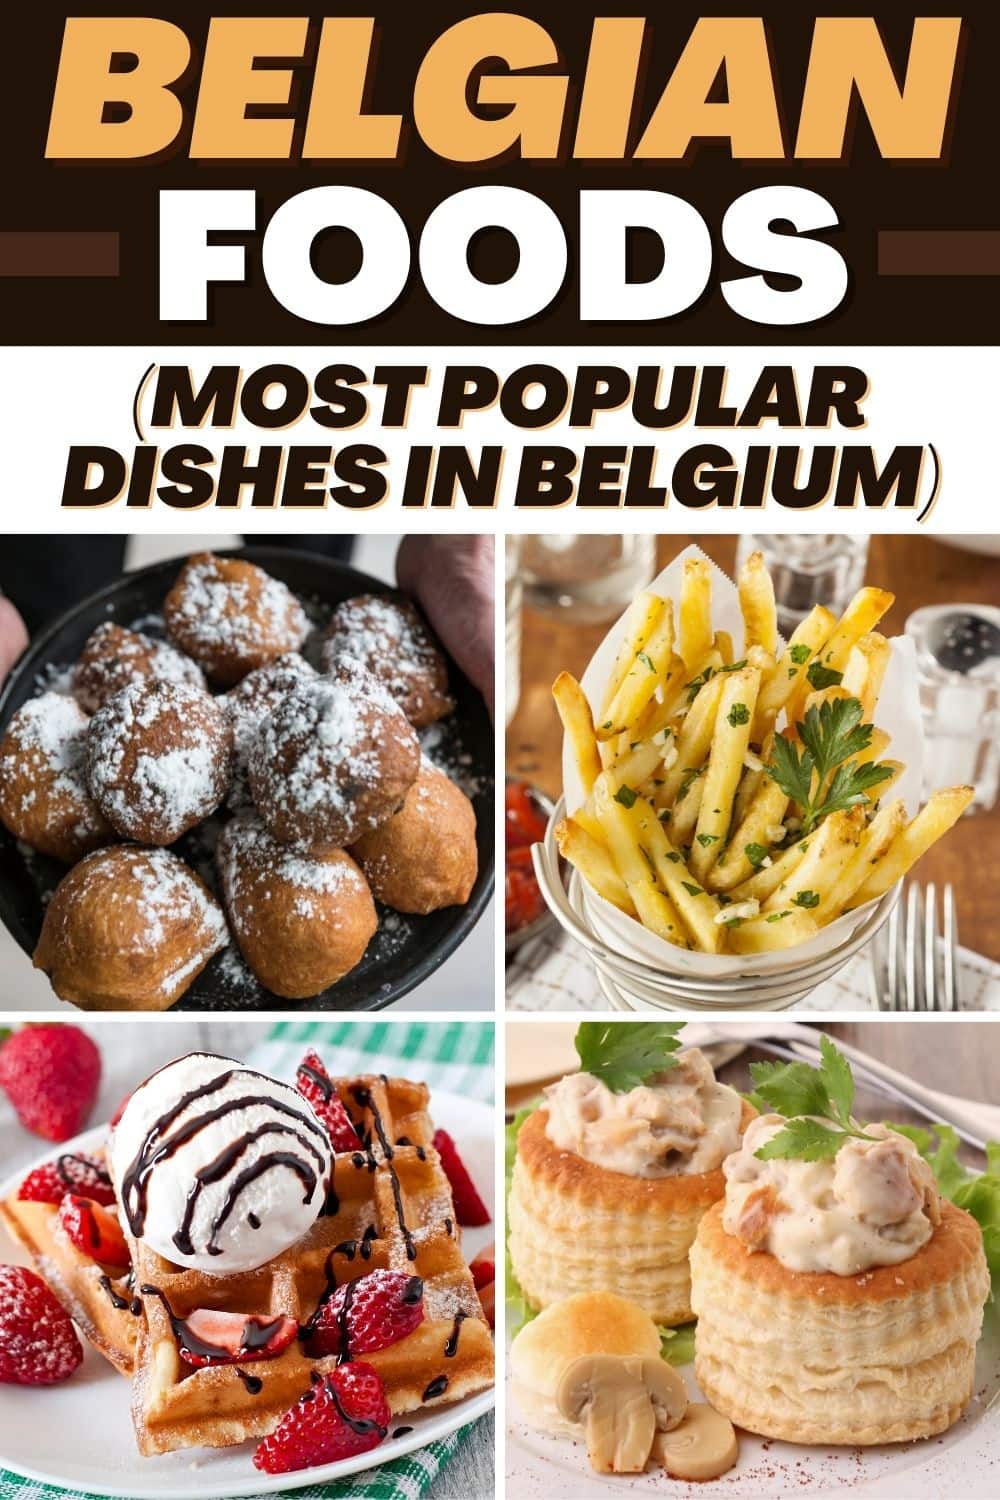 Belgian Foods (Most Popular Dishes in Belgium)